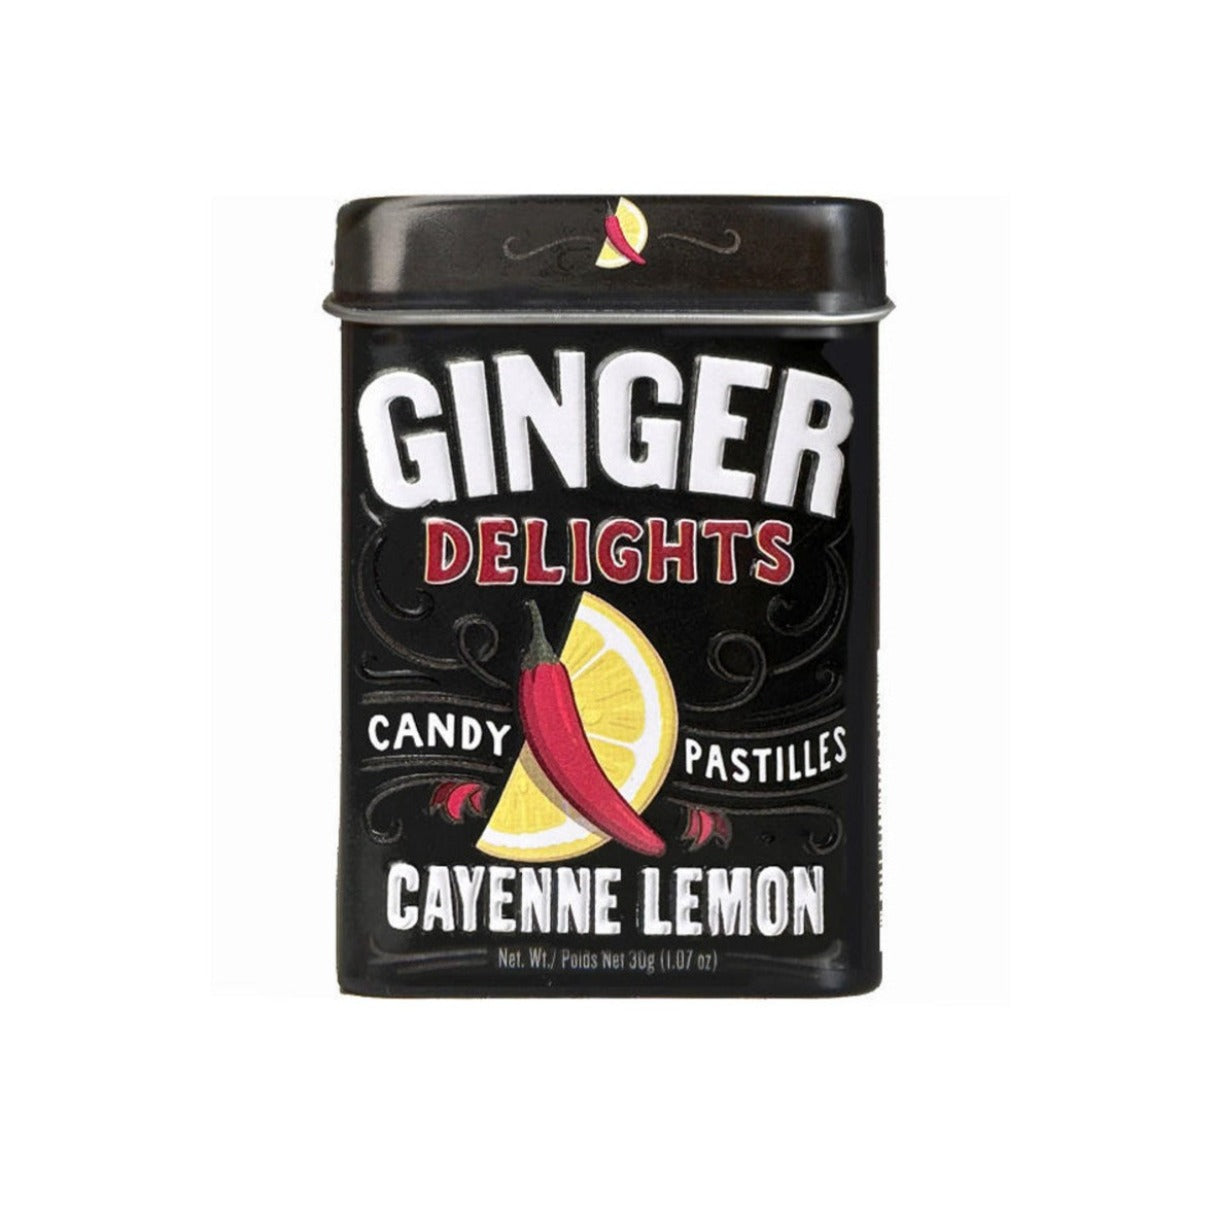 Ginger Delights Cayenne Lemon Candy Pastilles 1.07oz - 144ct